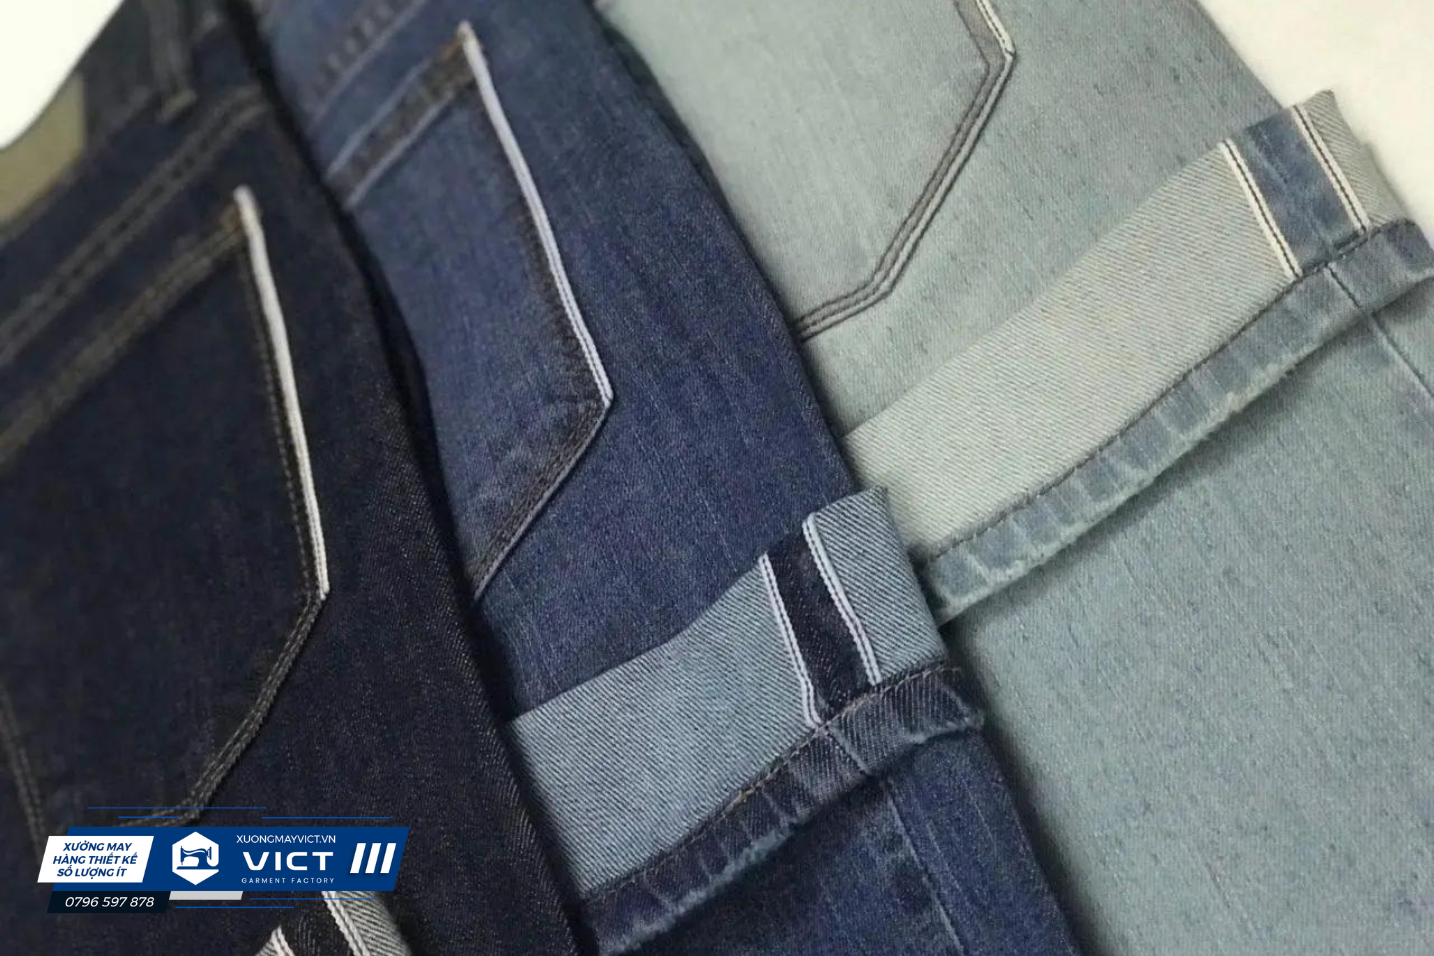 Vải denim được sử dụng để may quần jeans và trở thành biểu tượng của văn hóa Mỹ từ những năm 1950